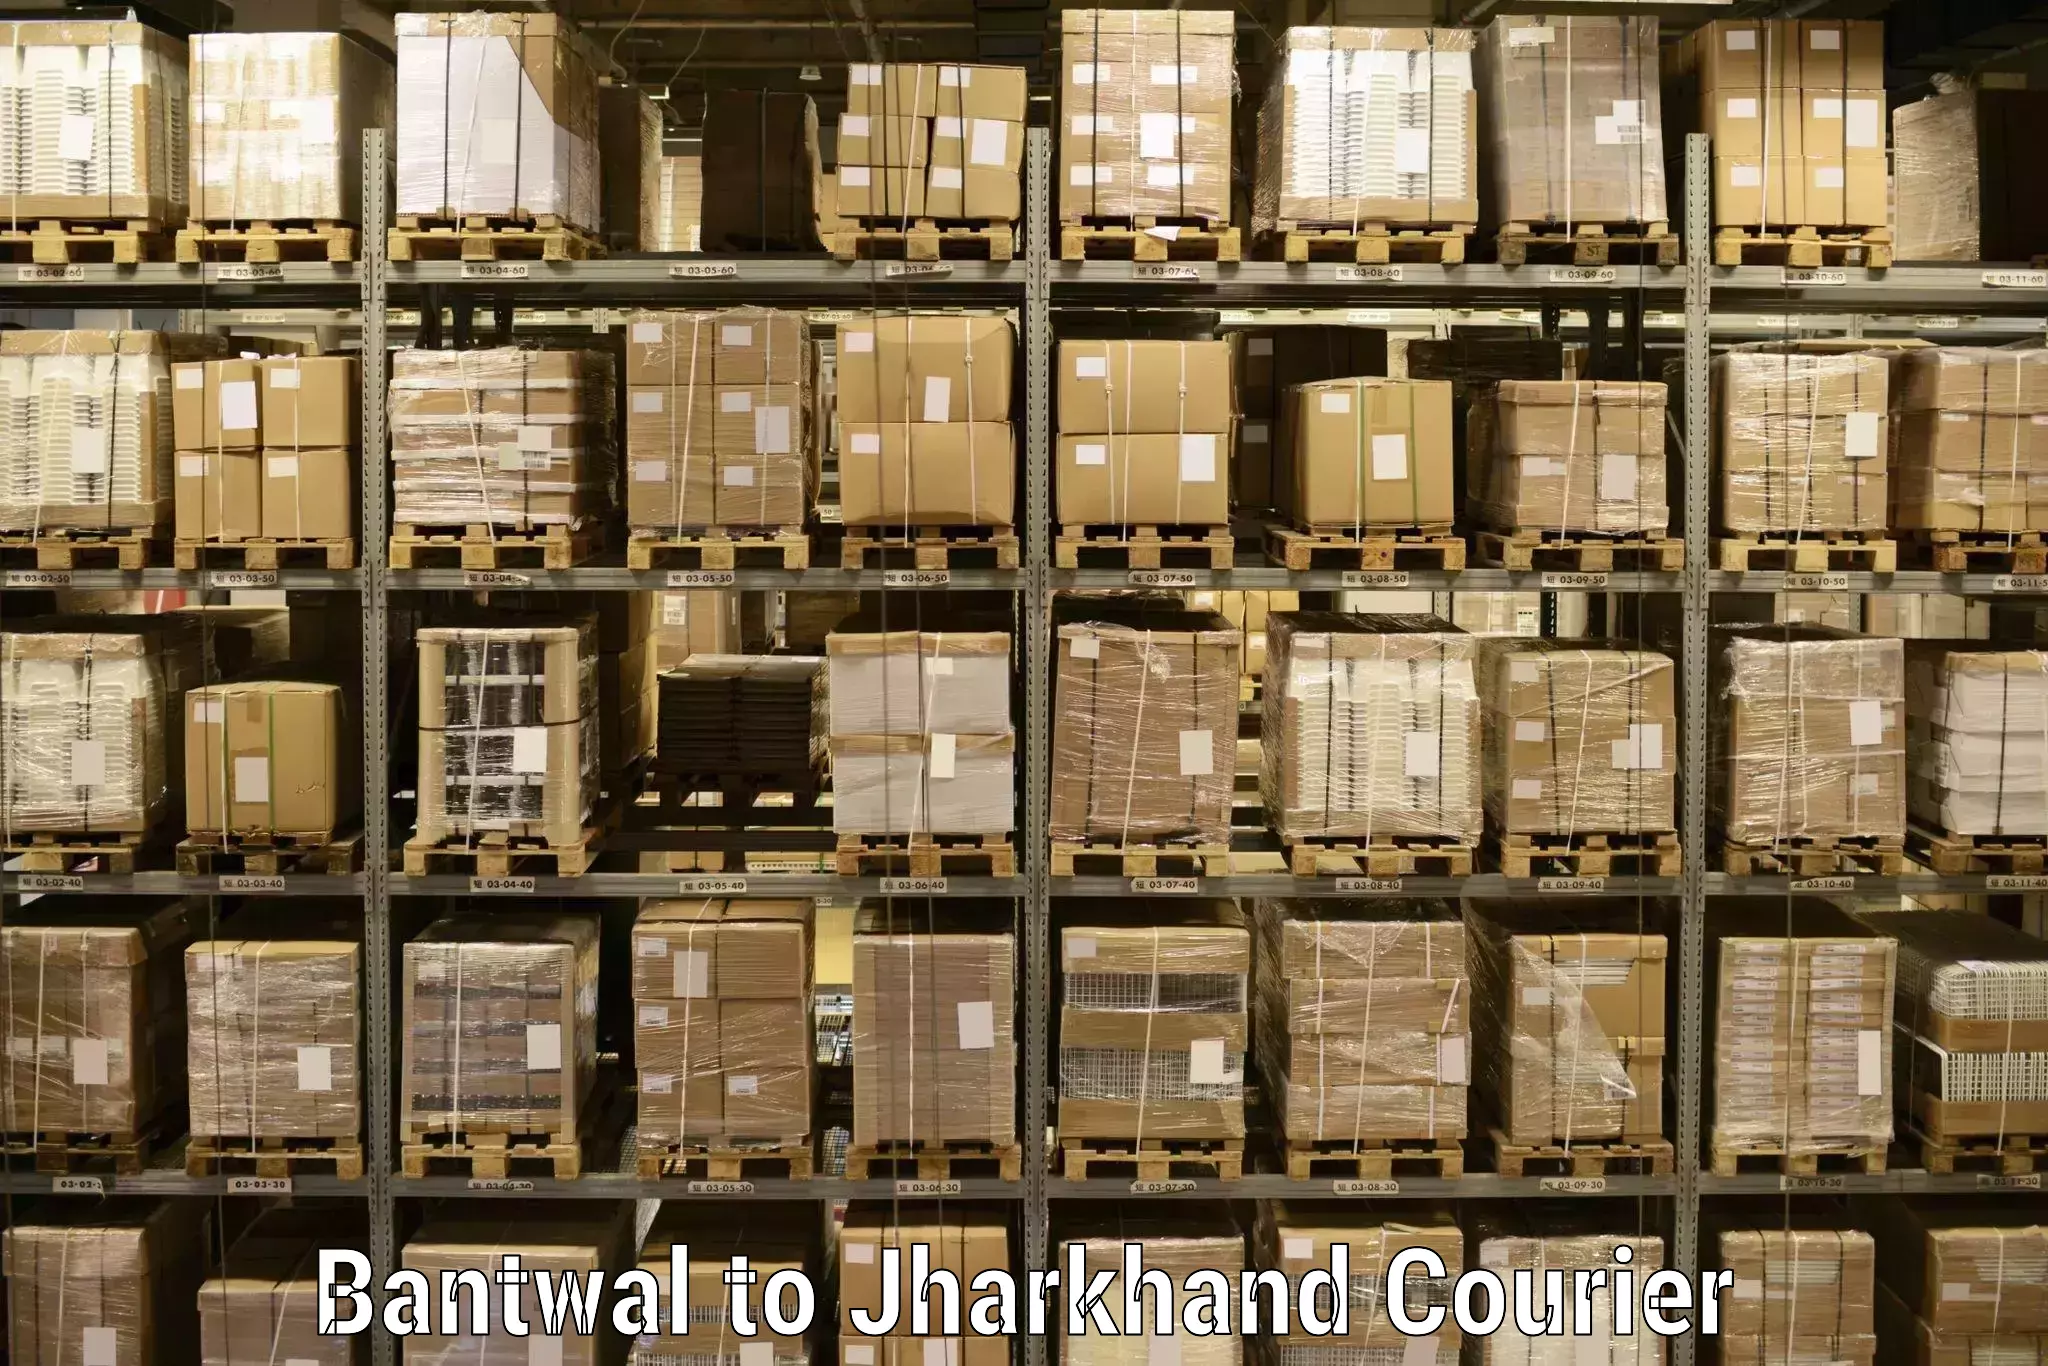 Secure shipping methods Bantwal to Shikaripara